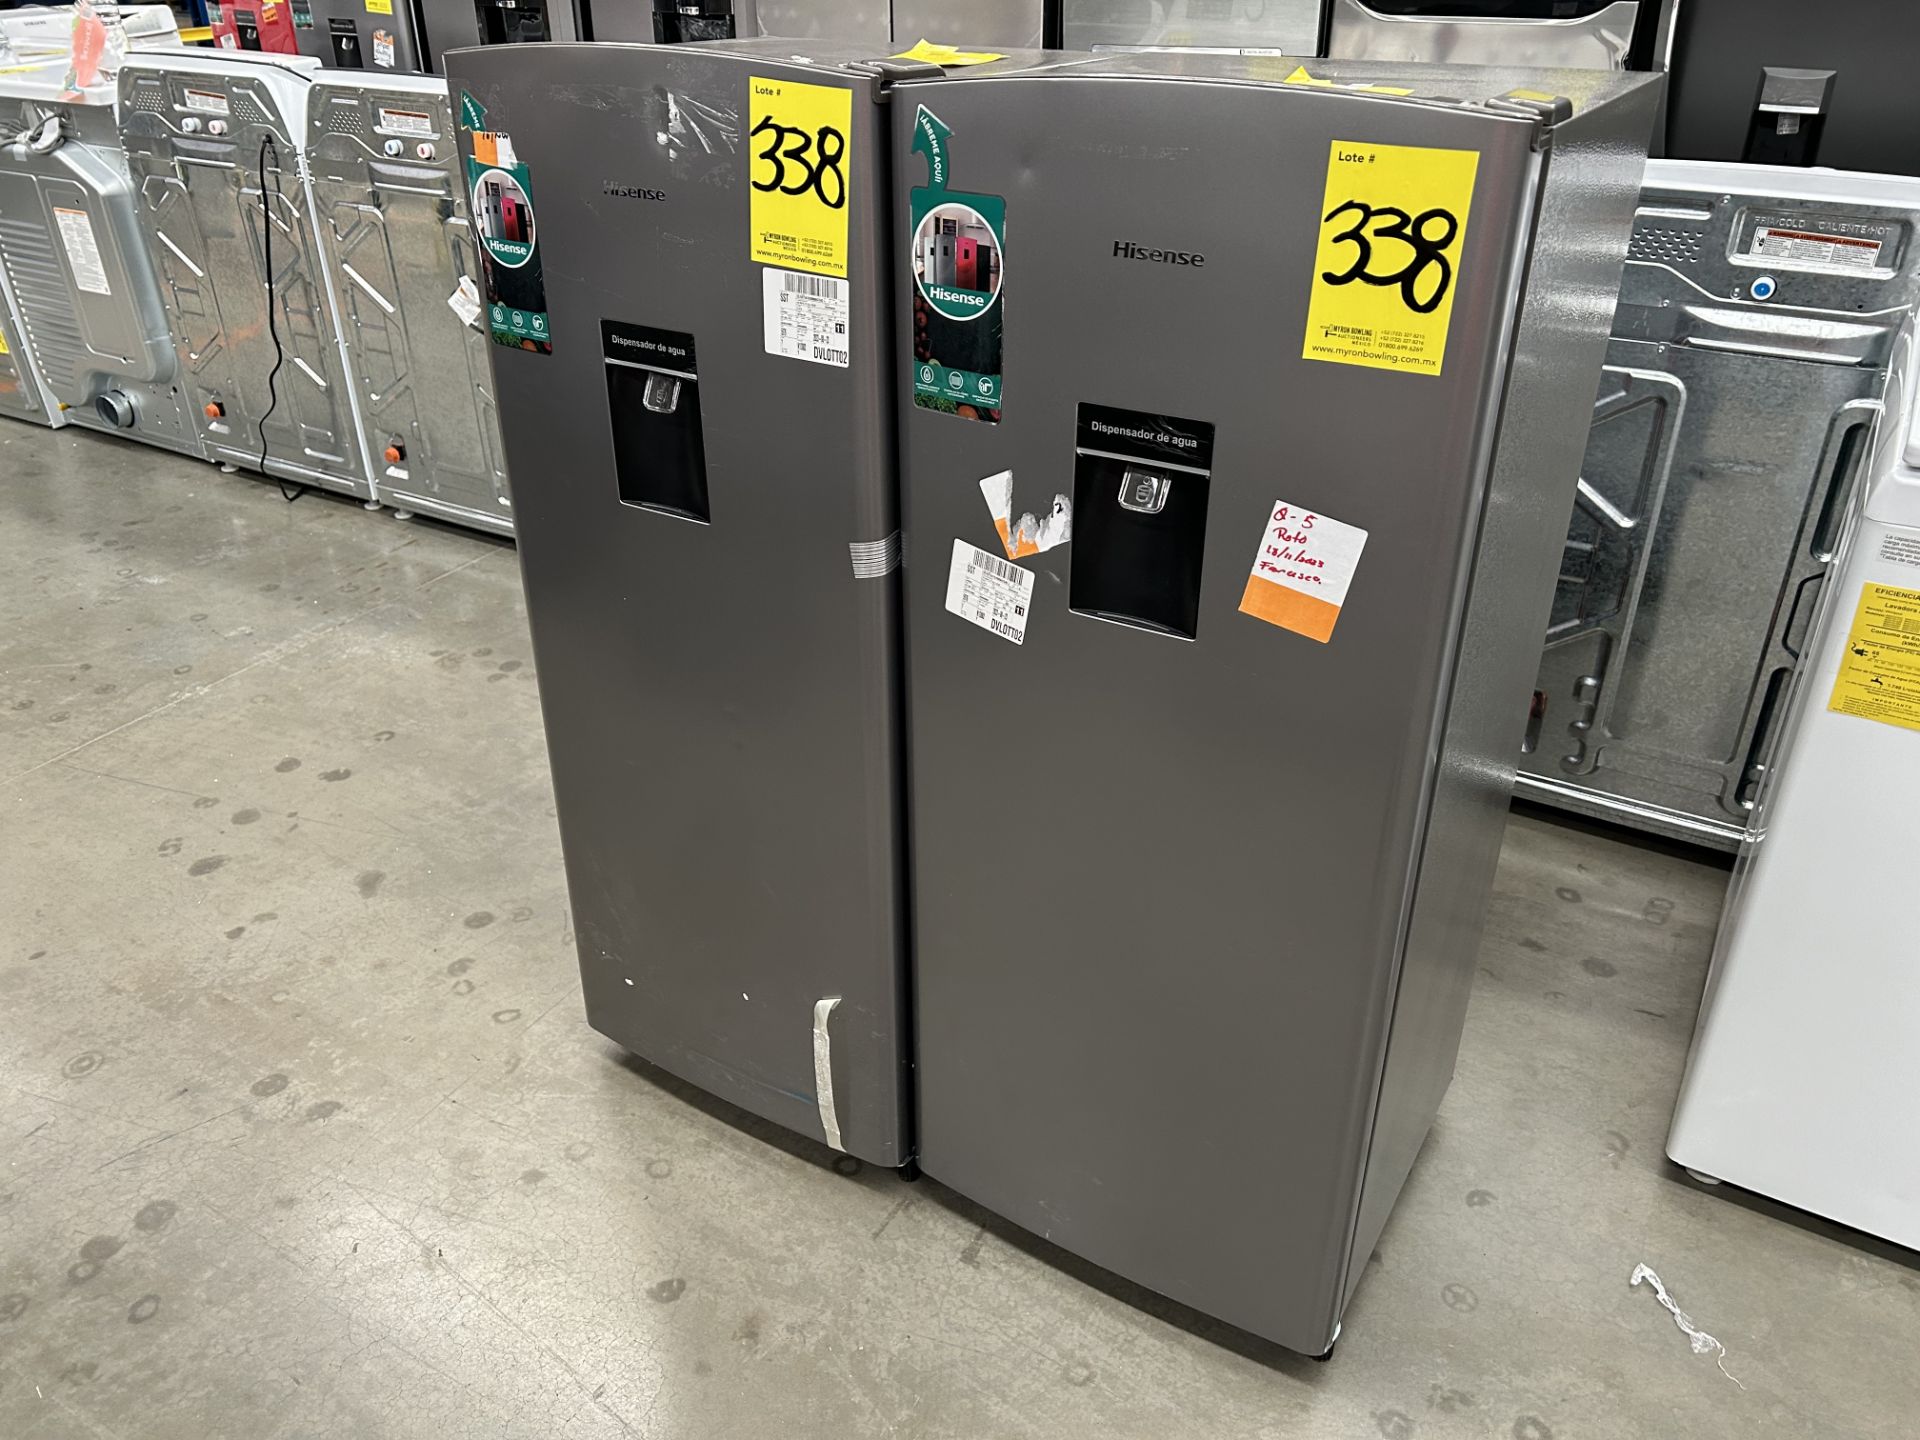 Lote de 2 refrigeradores contiene: 1 Refrigerador con dispensador de agua Marca HISENSE, Modelo RR6 - Image 2 of 6